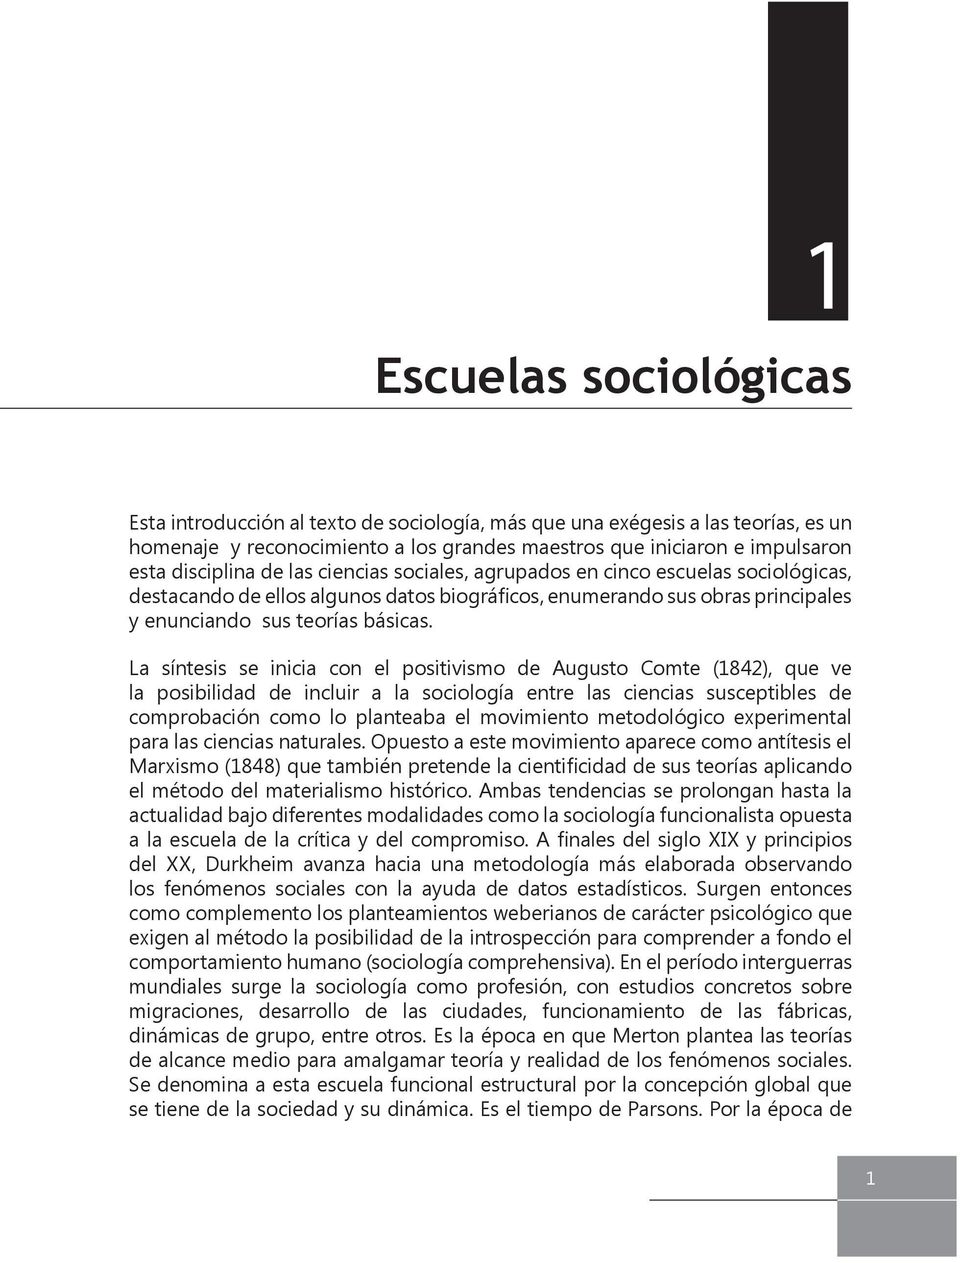 La síntesis se inicia con el positivismo de Augusto Comte (1842), que ve la posibilidad de incluir a la sociología entre las ciencias susceptibles de comprobación como lo planteaba el movimiento